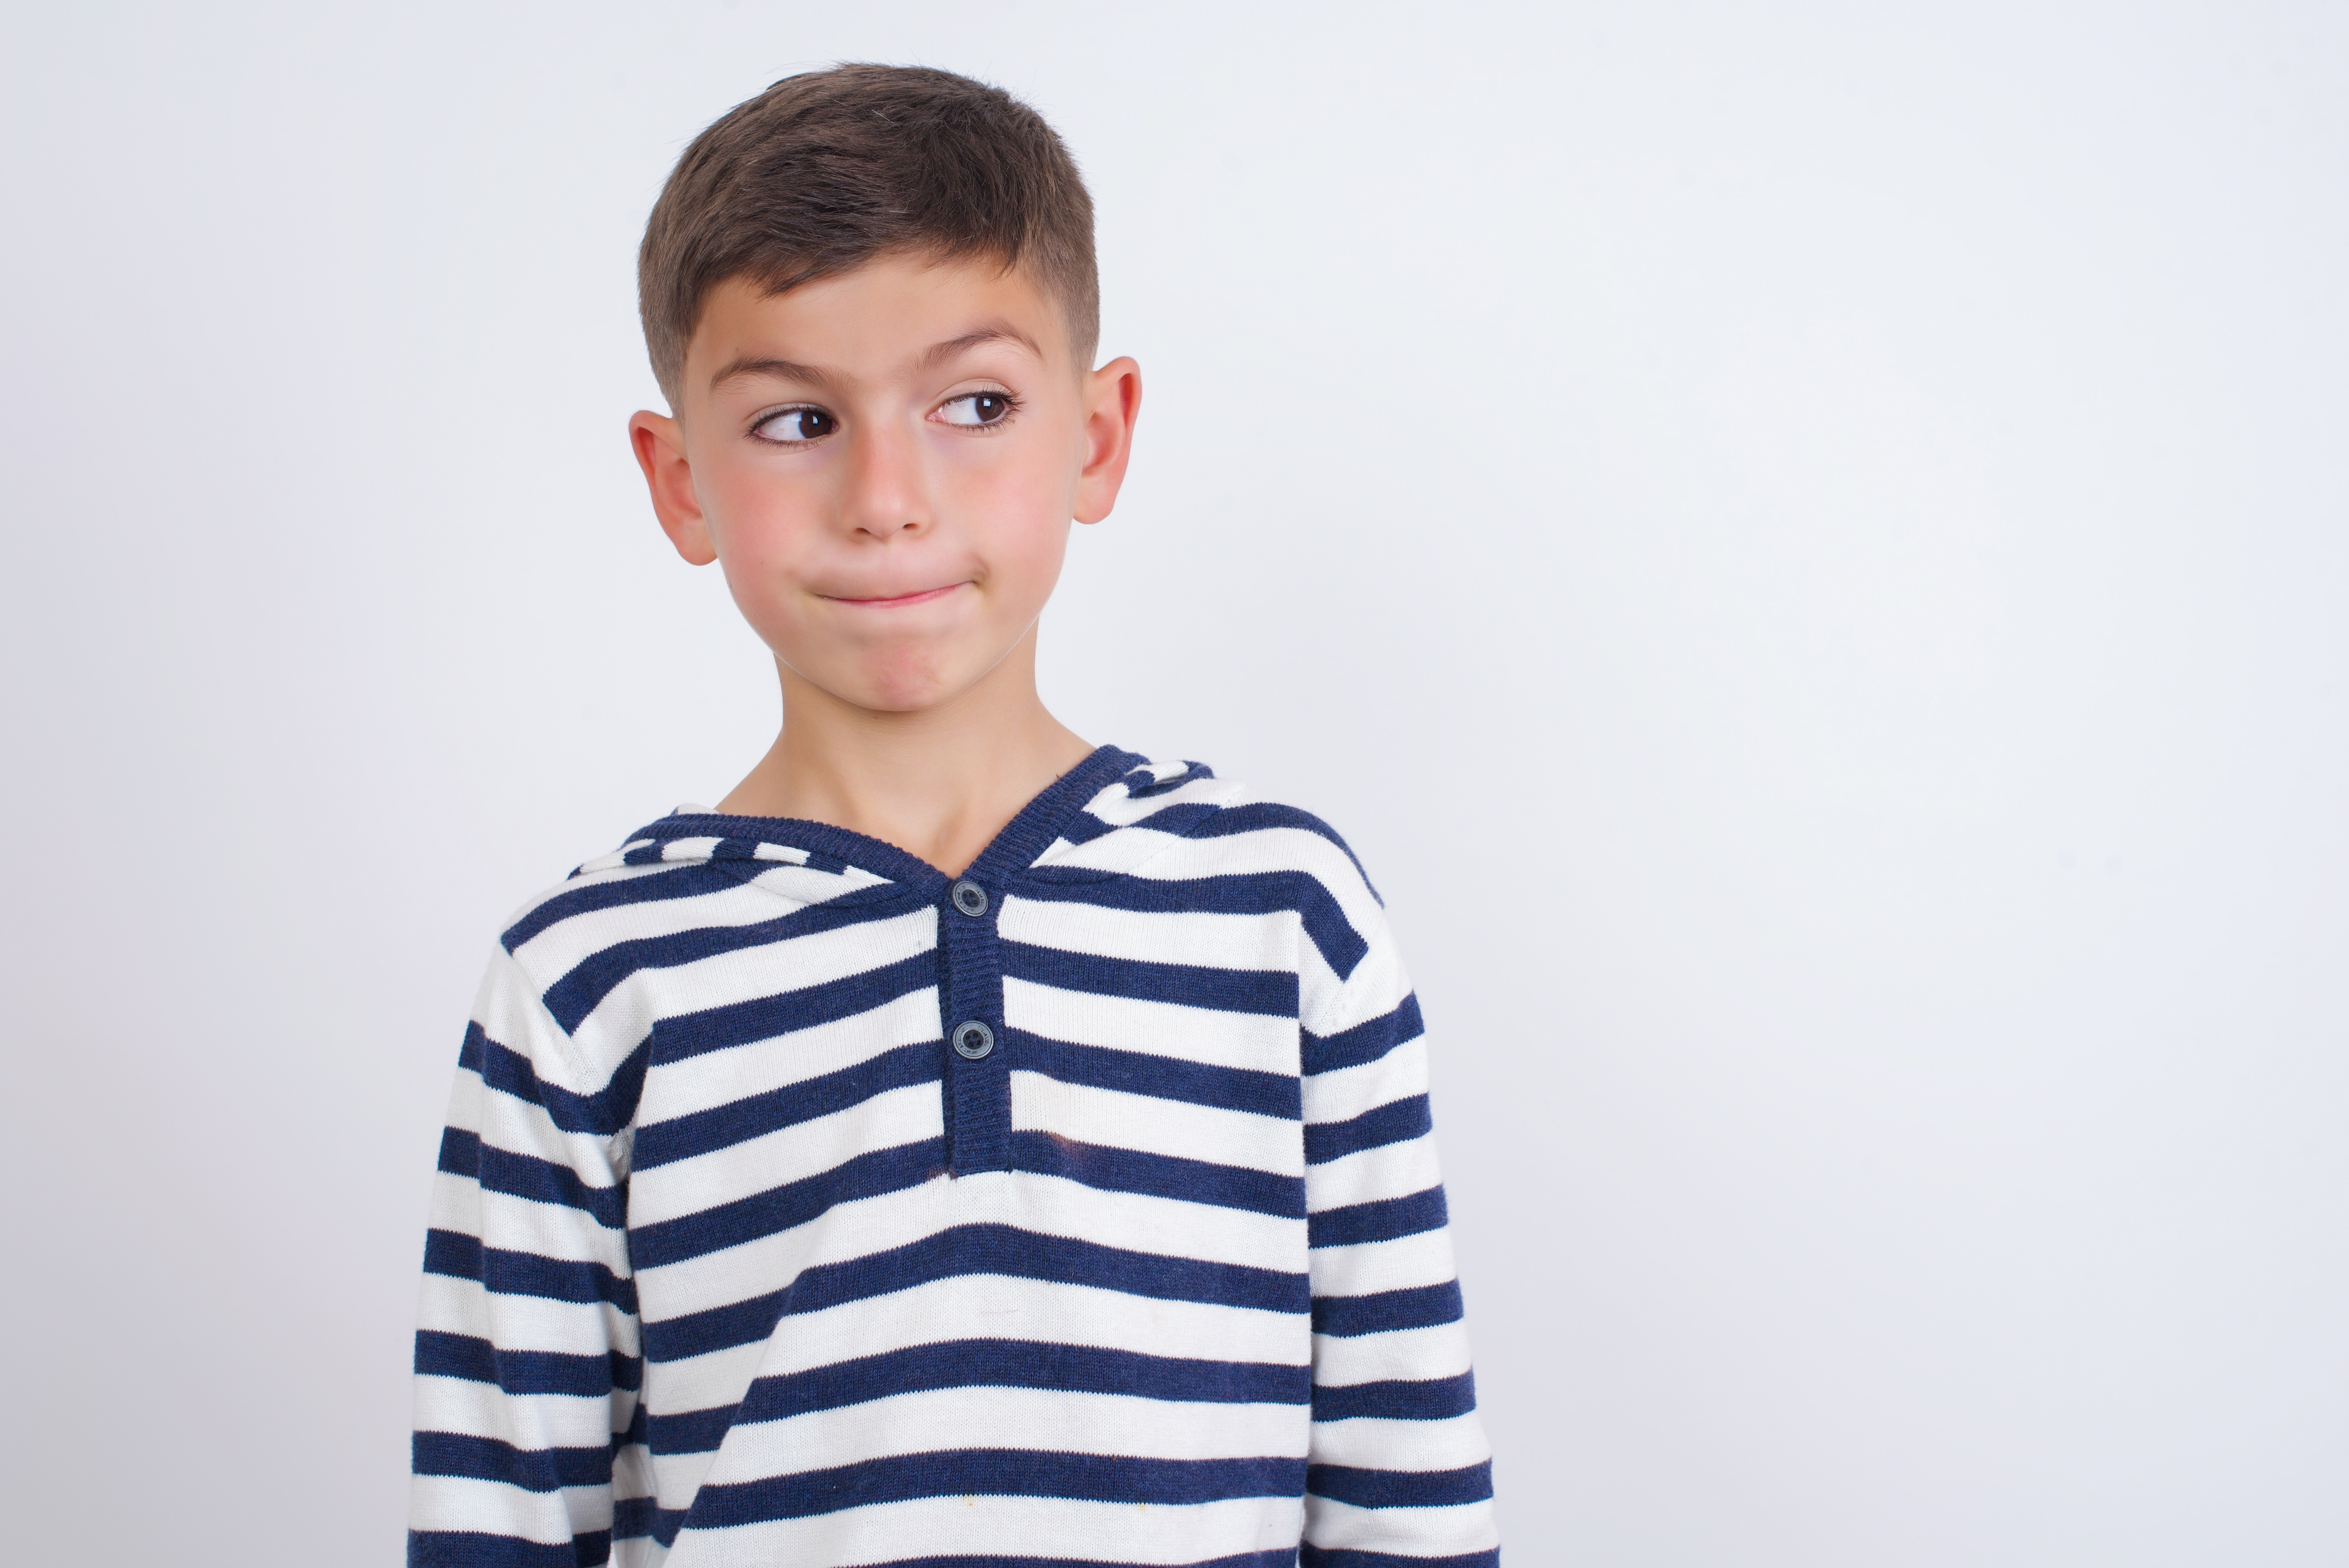 Un jeune garçon à l'air perplexe | Source : Shutterstock